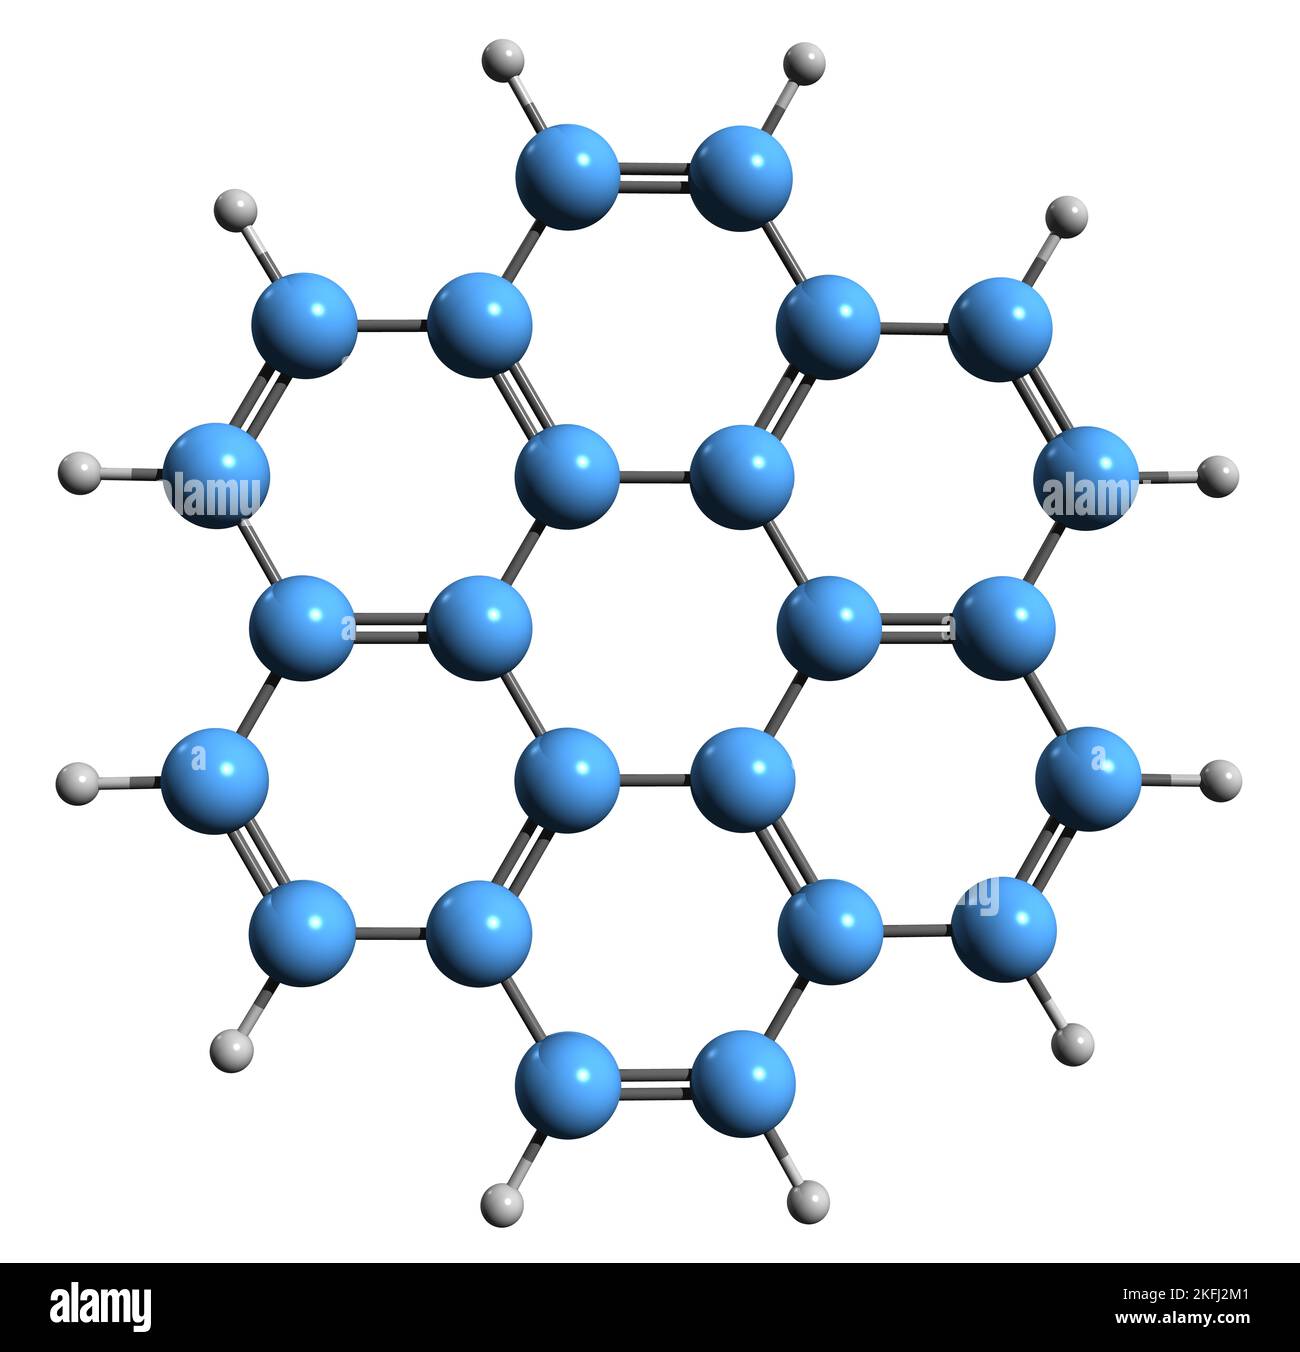 3D imagen de la fórmula esquelética de Coronene - estructura química molecular del superbenceno de hidrocarburo aromático policíclico aislado sobre fondo blanco Foto de stock